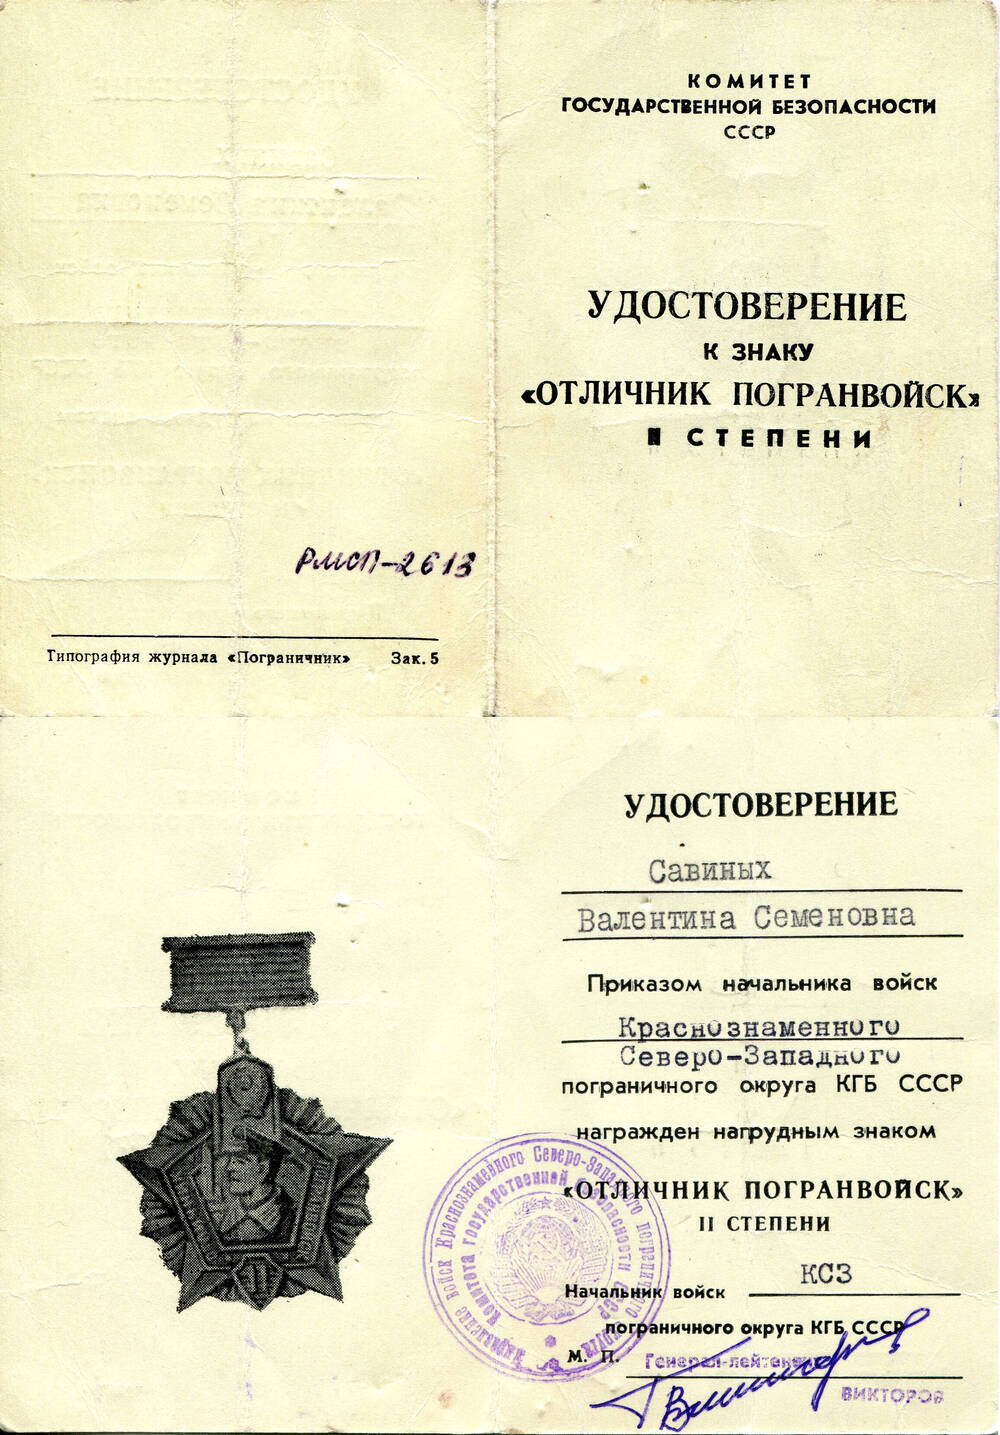 Документ. Удостоверение к знаку «Отличник погранвойск» II степени. Союз Советских Социалистических Республик, 1970-е гг.